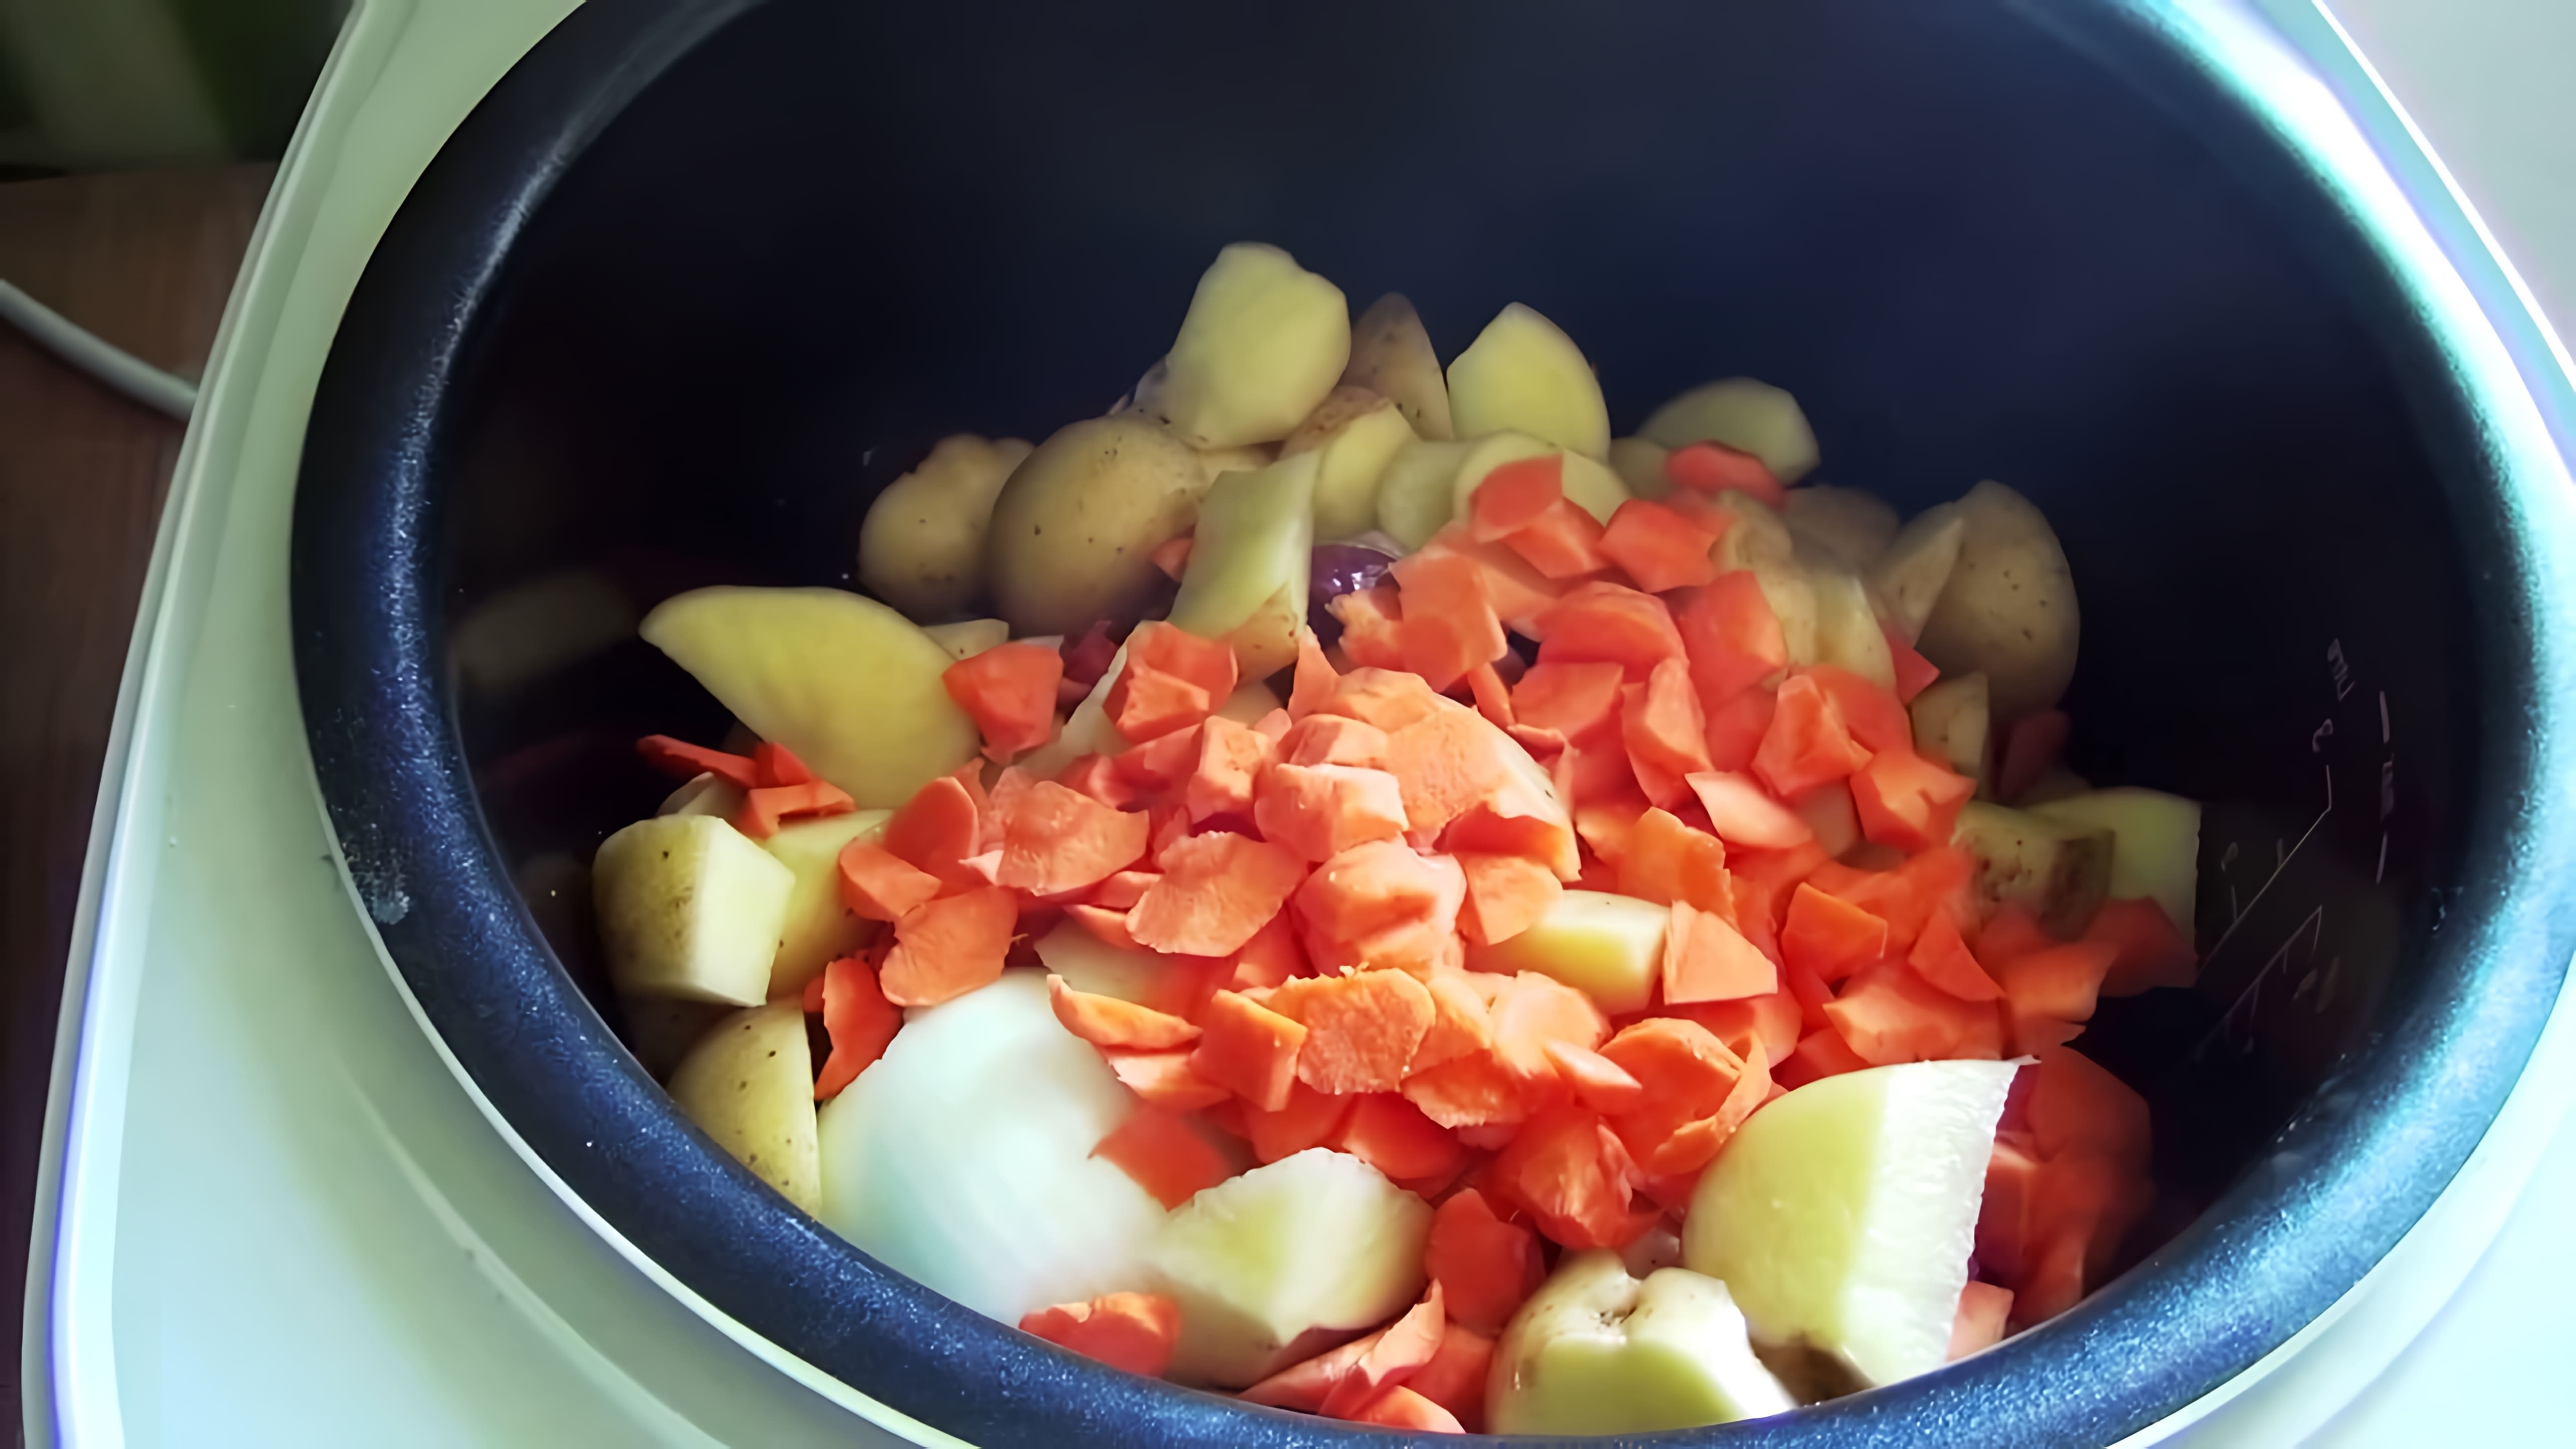 В этом видео демонстрируется процесс приготовления мясного супа в мультиварке